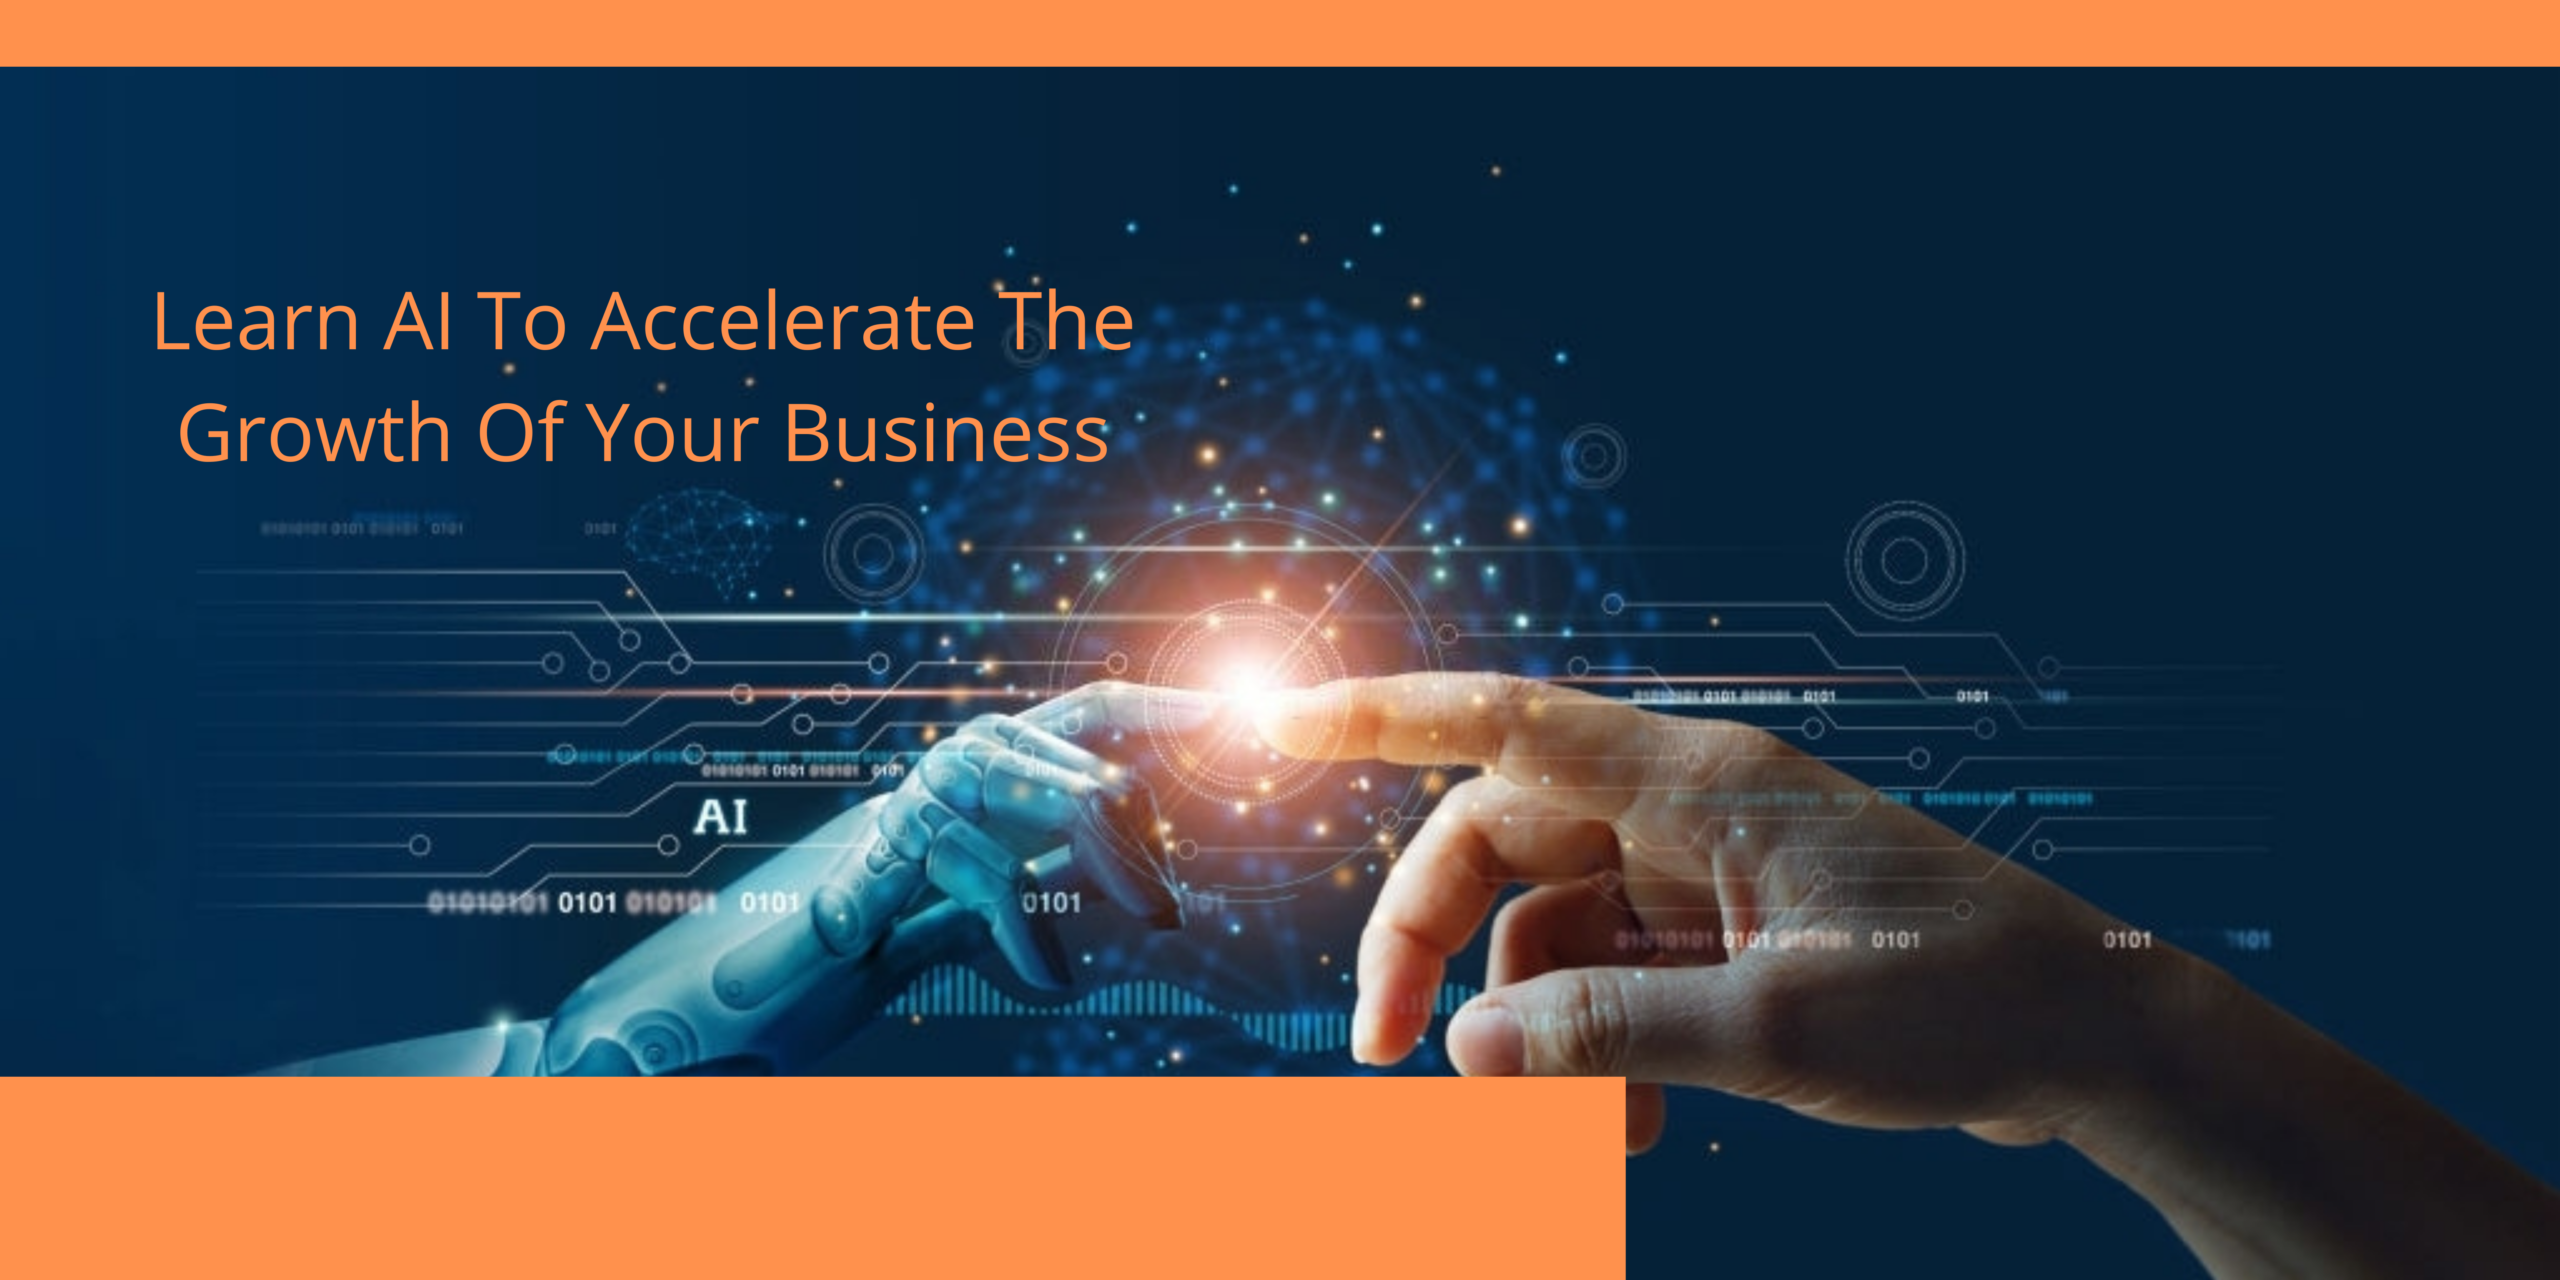 Learn AI/AI for corporates